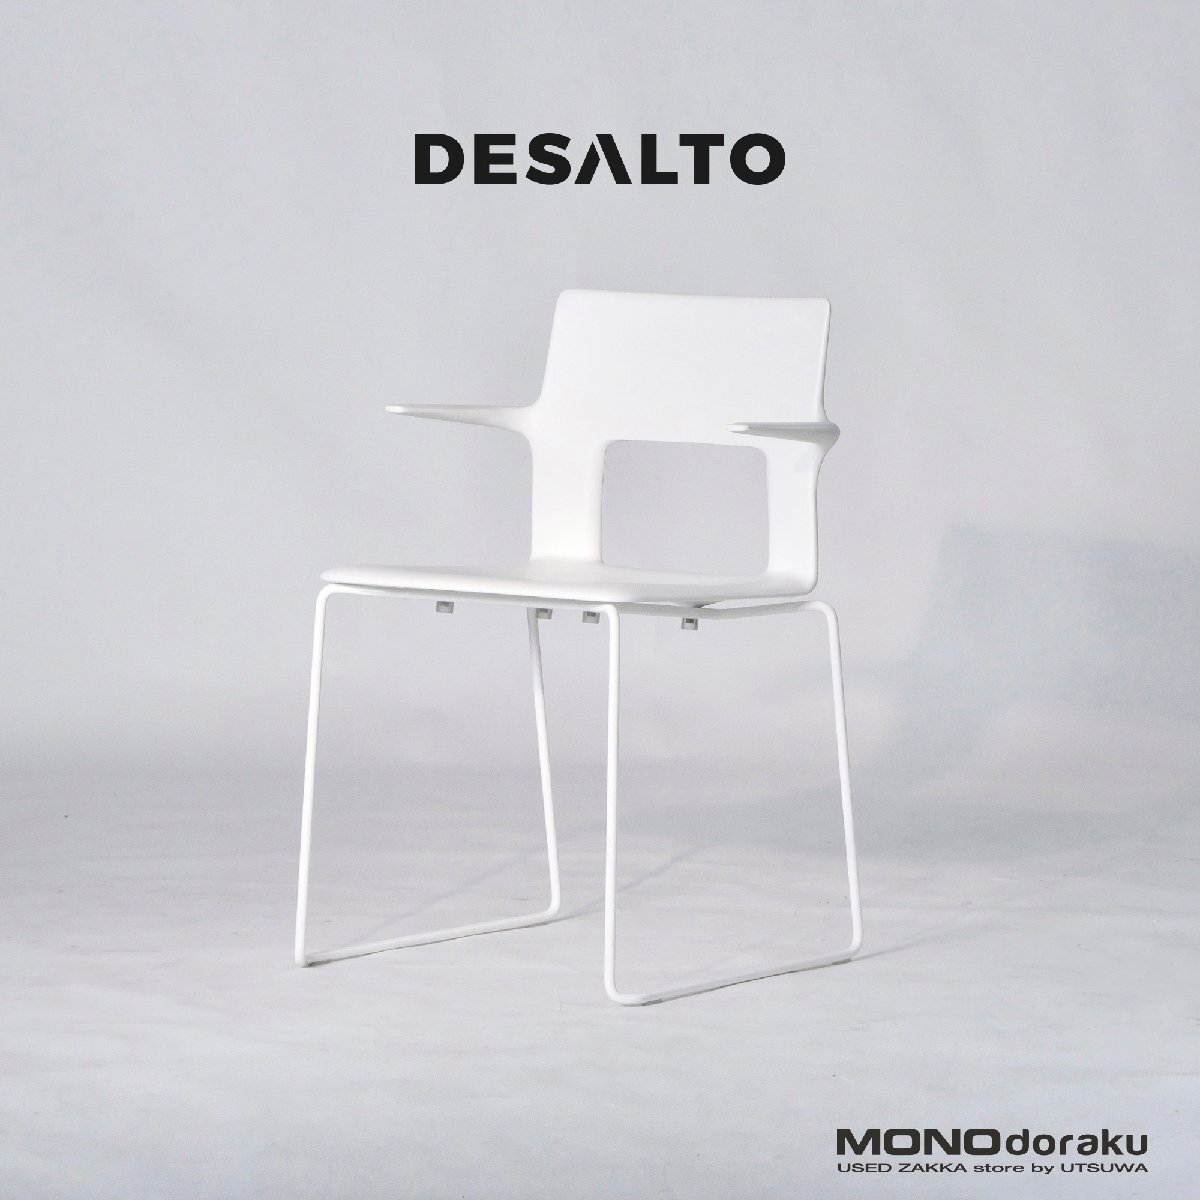 ダイニングチェア デサルト DESALTO アームチェア(1) スタッキングチェア イタリア製 イタリアモダン シンプルモダン_画像1